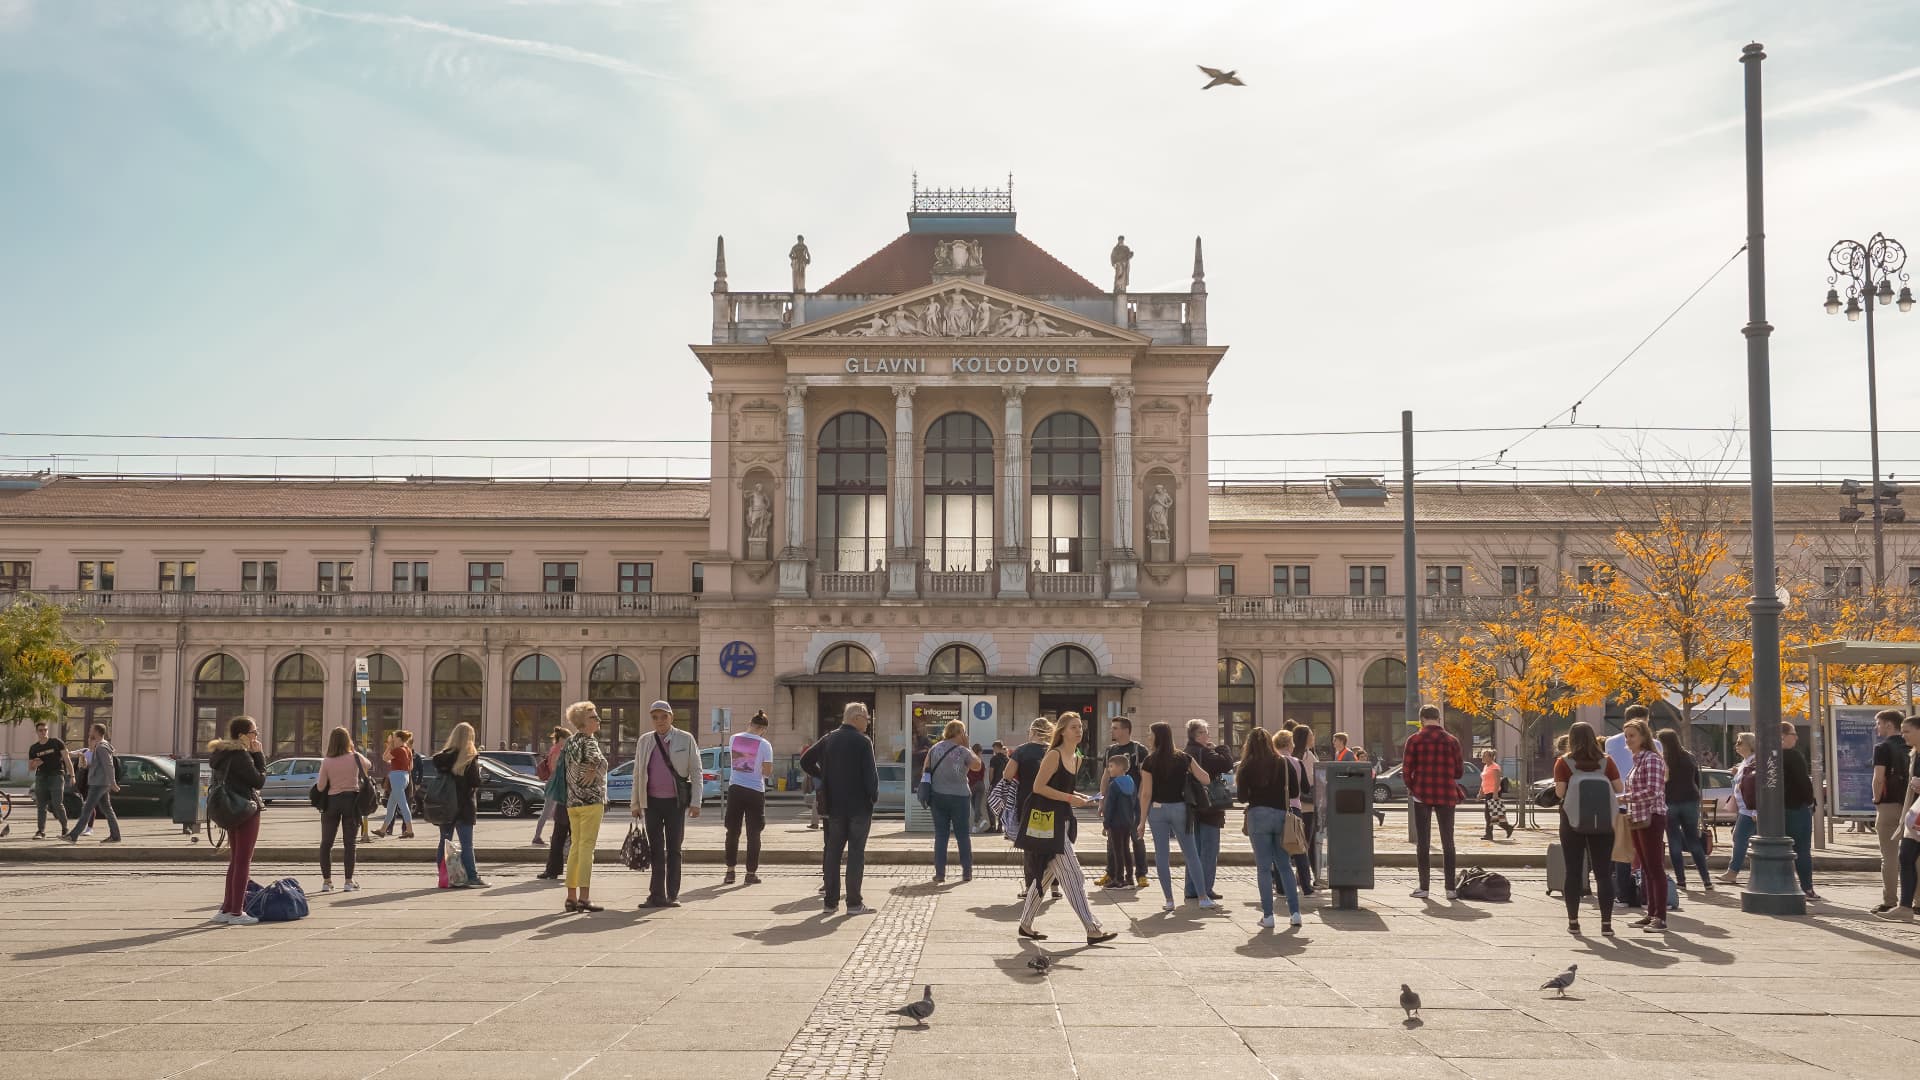 Built in the late 1800's, Glavni Kolodvor is Zagreb's main train station.